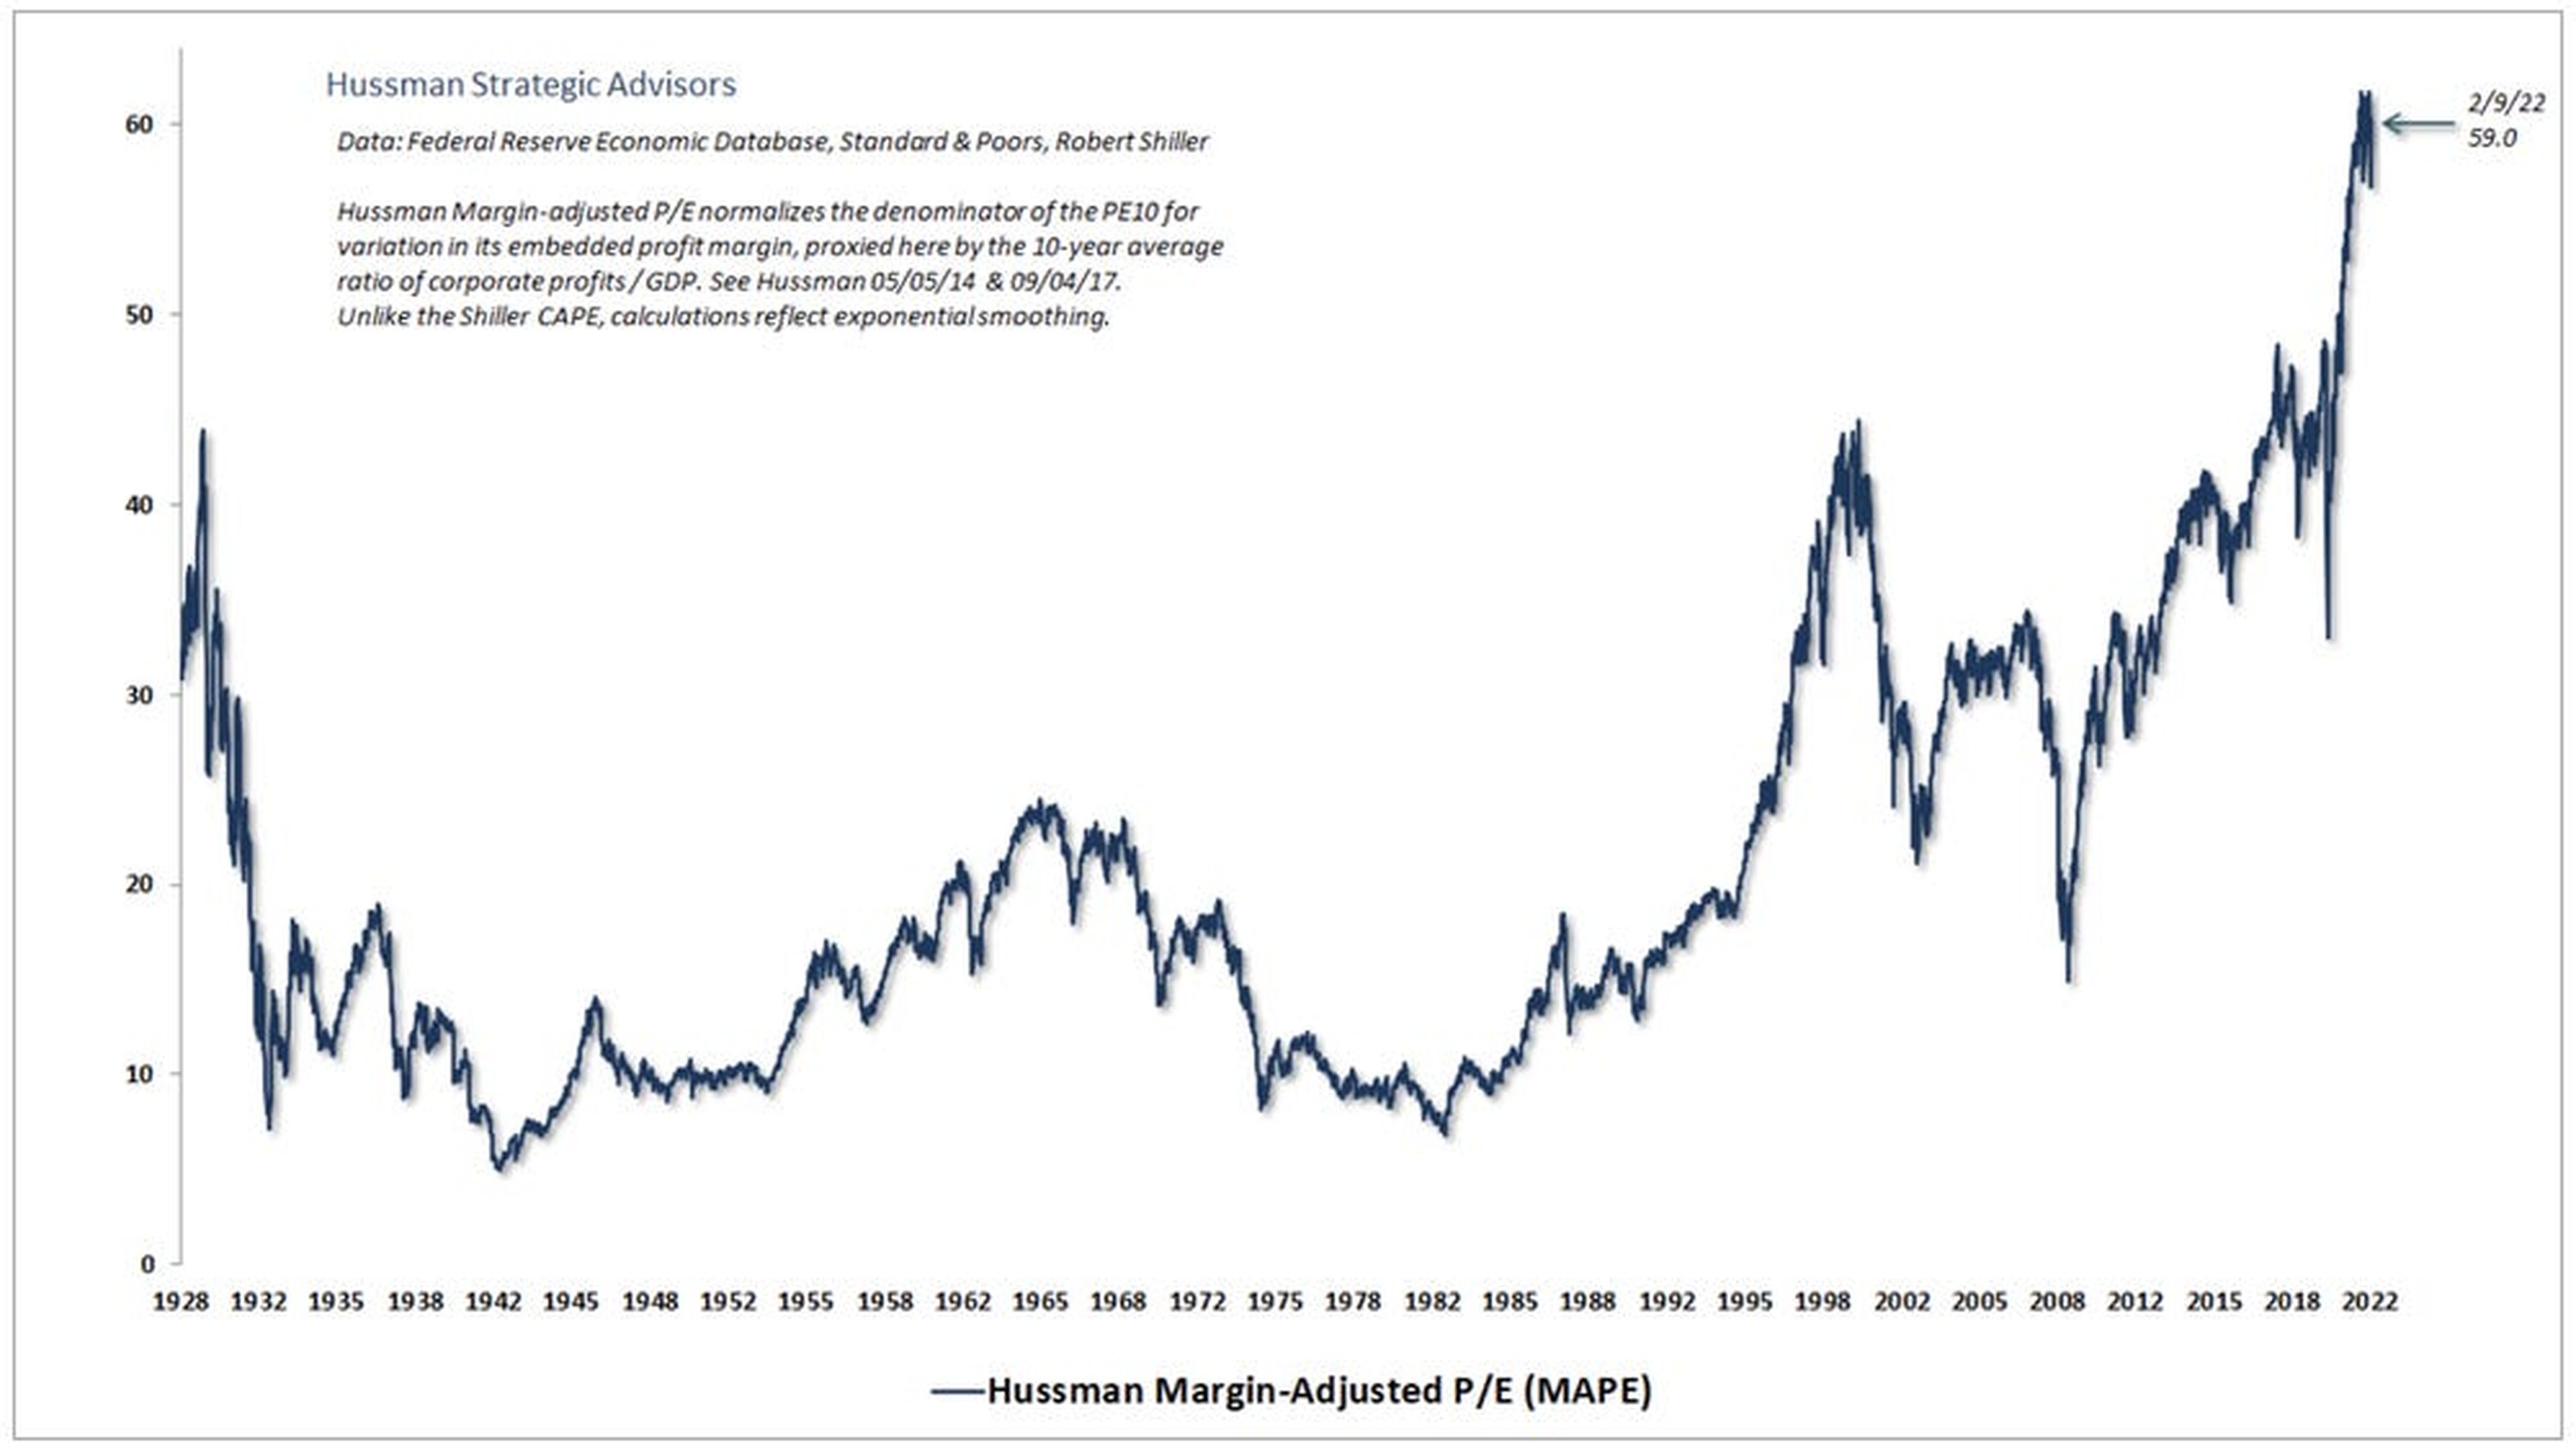 Esta es la situación en cuanto a la relación precio-ganancias media ajustada al margen del S&P 500.